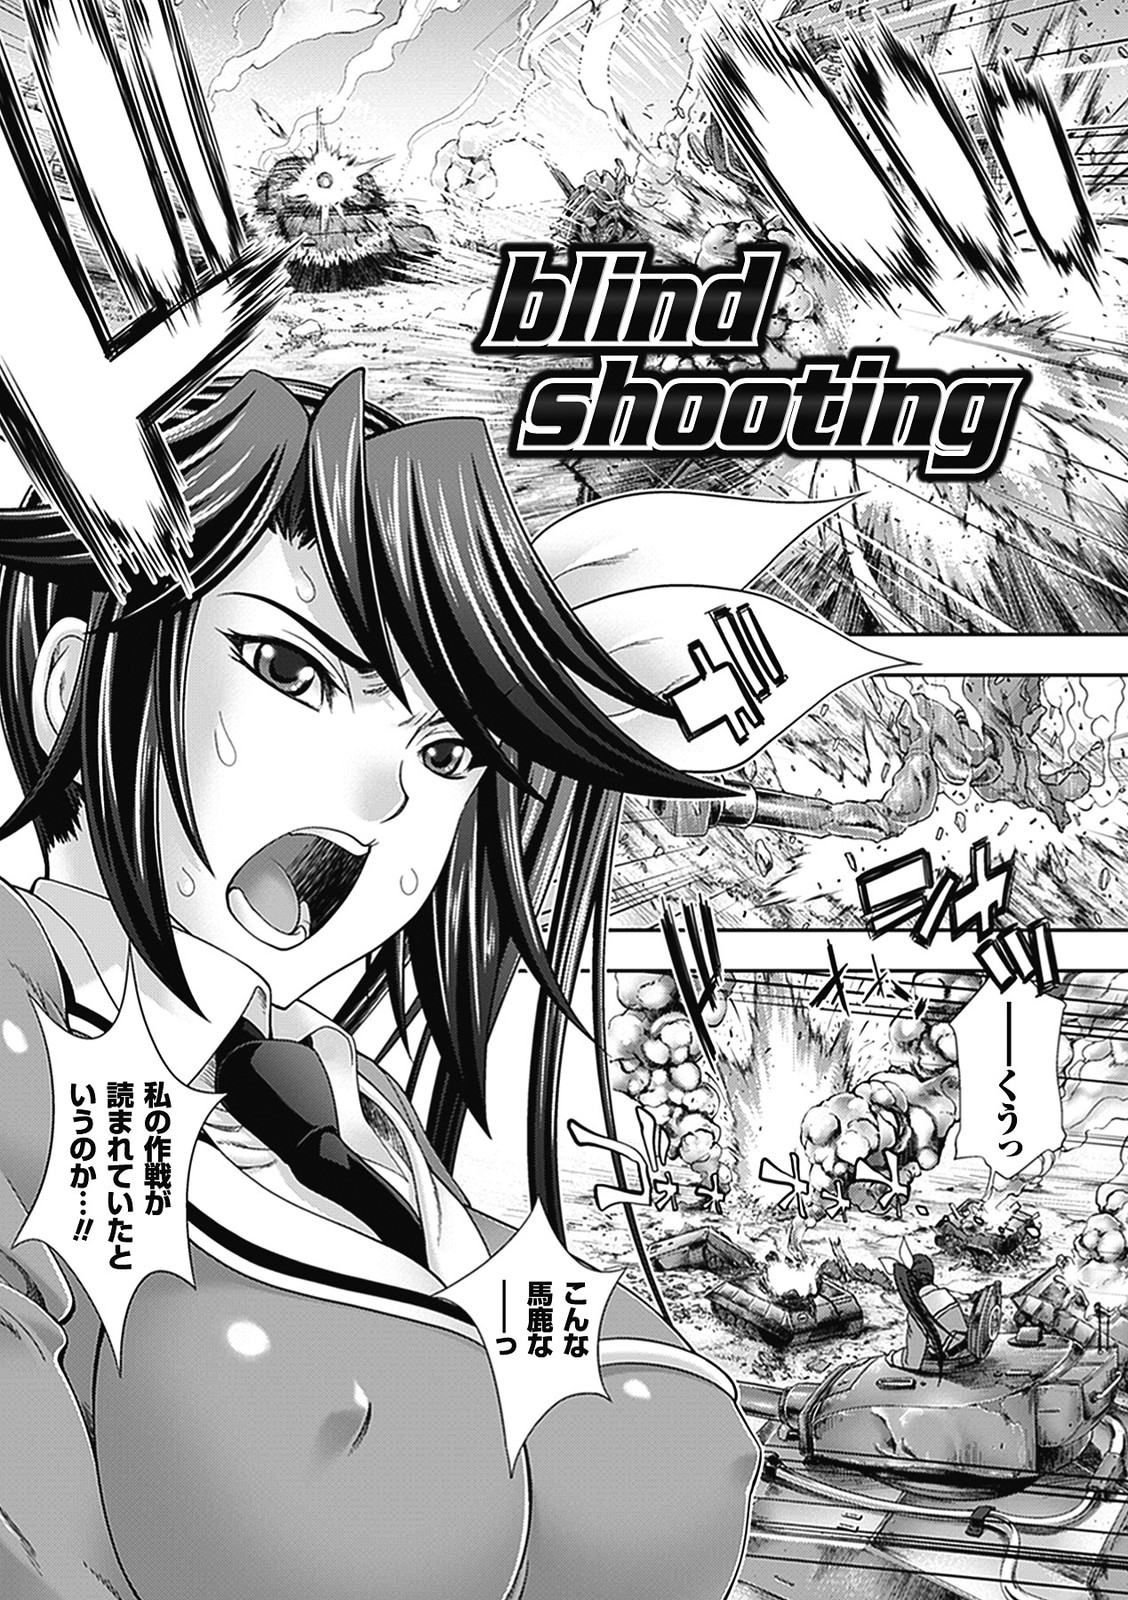 【エロ漫画】両目を負傷し盲目になってしまった女軍人…彼女に恨みを持つ部下たちに拉致され輪姦レイプされるｗｗｗ【GEN:blind shooting】